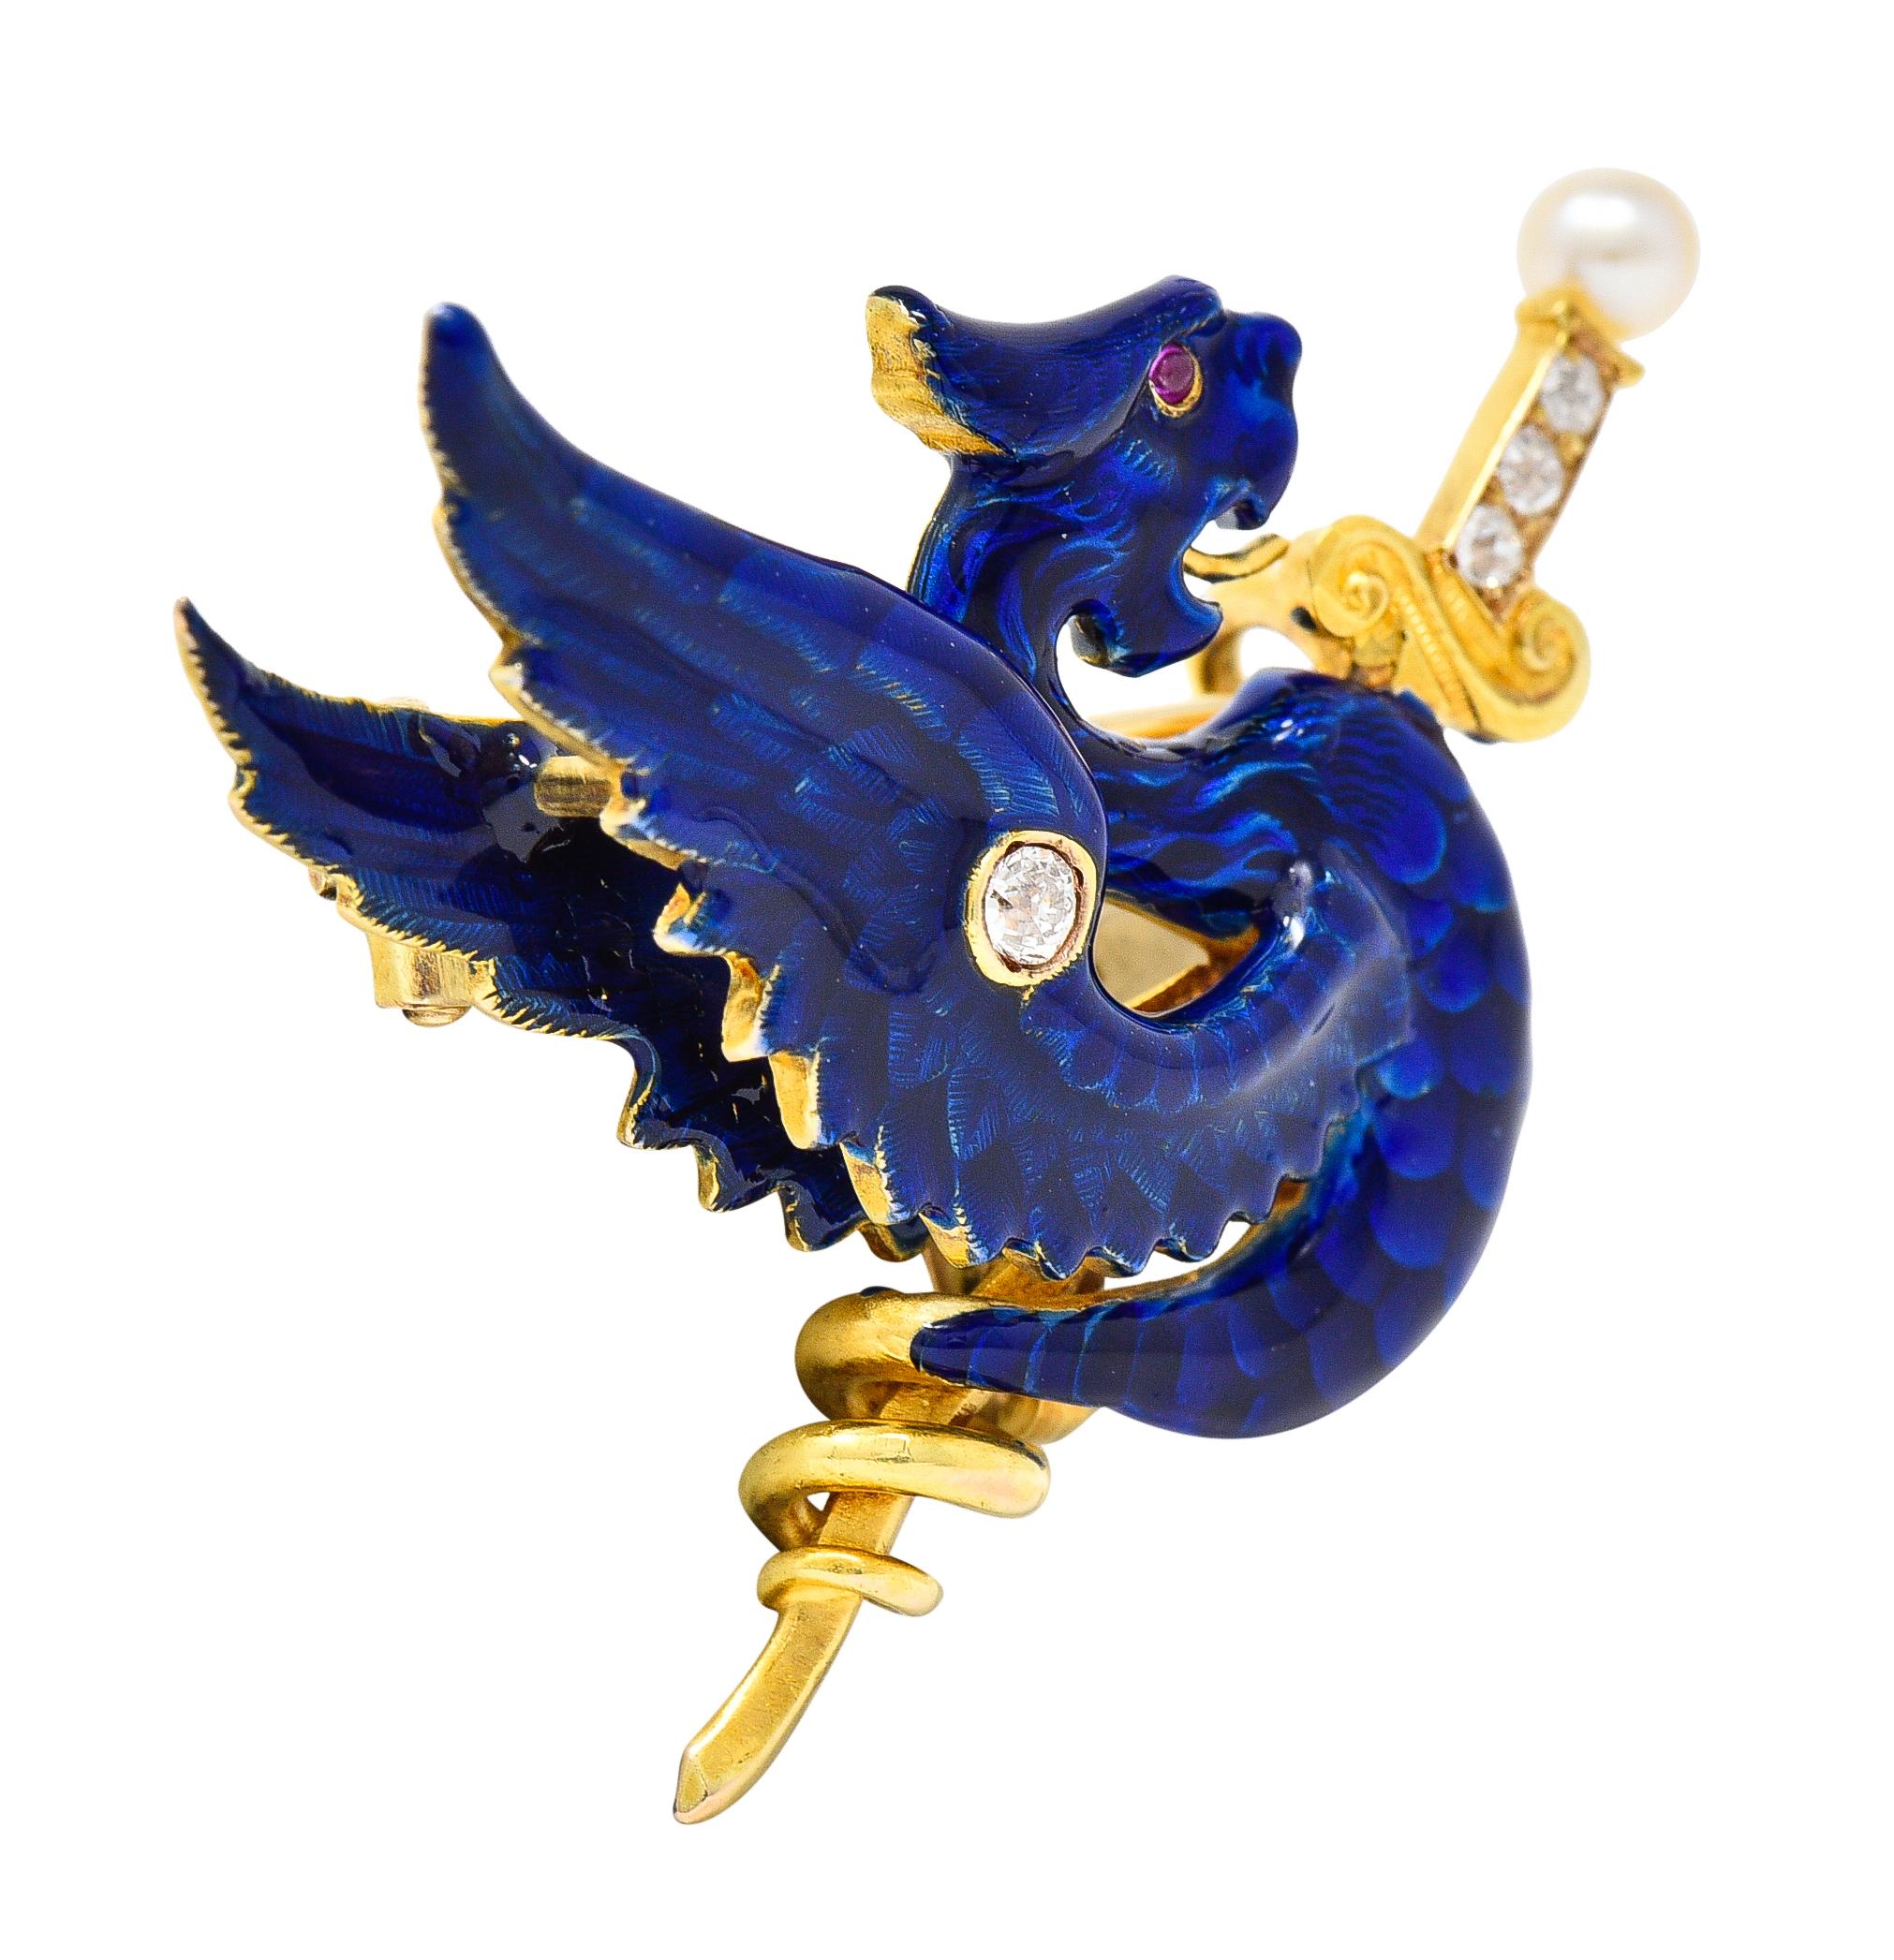 Entworfen als geflügelte Wyvern-Schlange, die sich um ein Schwert mit fächelnden Flügeln windet
Mit Basse-Taille-Email, das über eingravierten Federn und Schuppen glänzt
Glänzende transparente königsblaue Farbe - mit minimalem Verlust
Schwertgriff